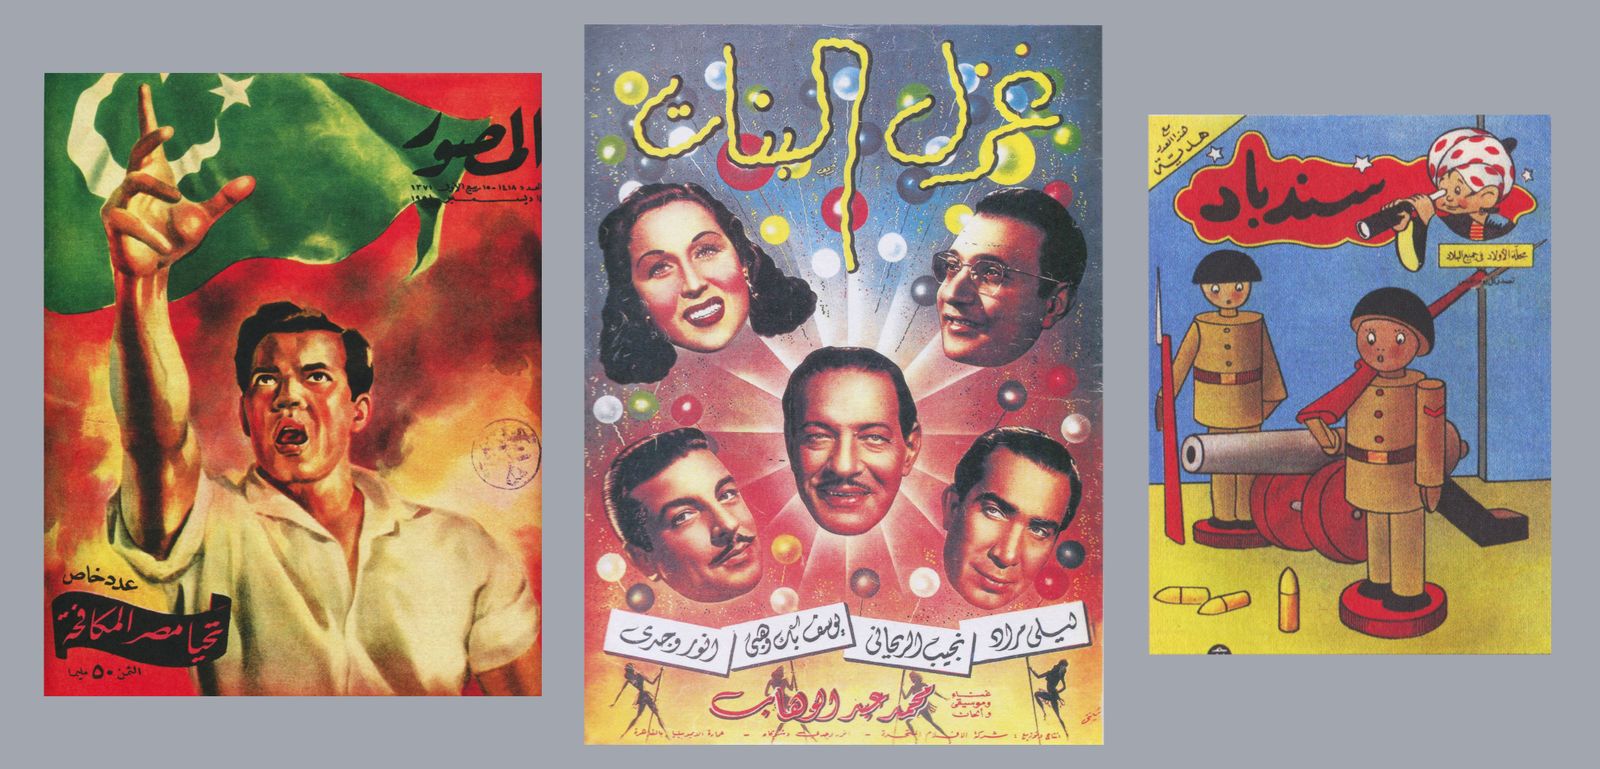 (Von links nach rechts) Cover von Al-Musawwar, 1956; Ghazal al-banat Cover eines Pressebuchs, 1949; Sindibad Kinderzeitschrift, entworfen von Hussein Bicar, undatiert; Quelle: AUC